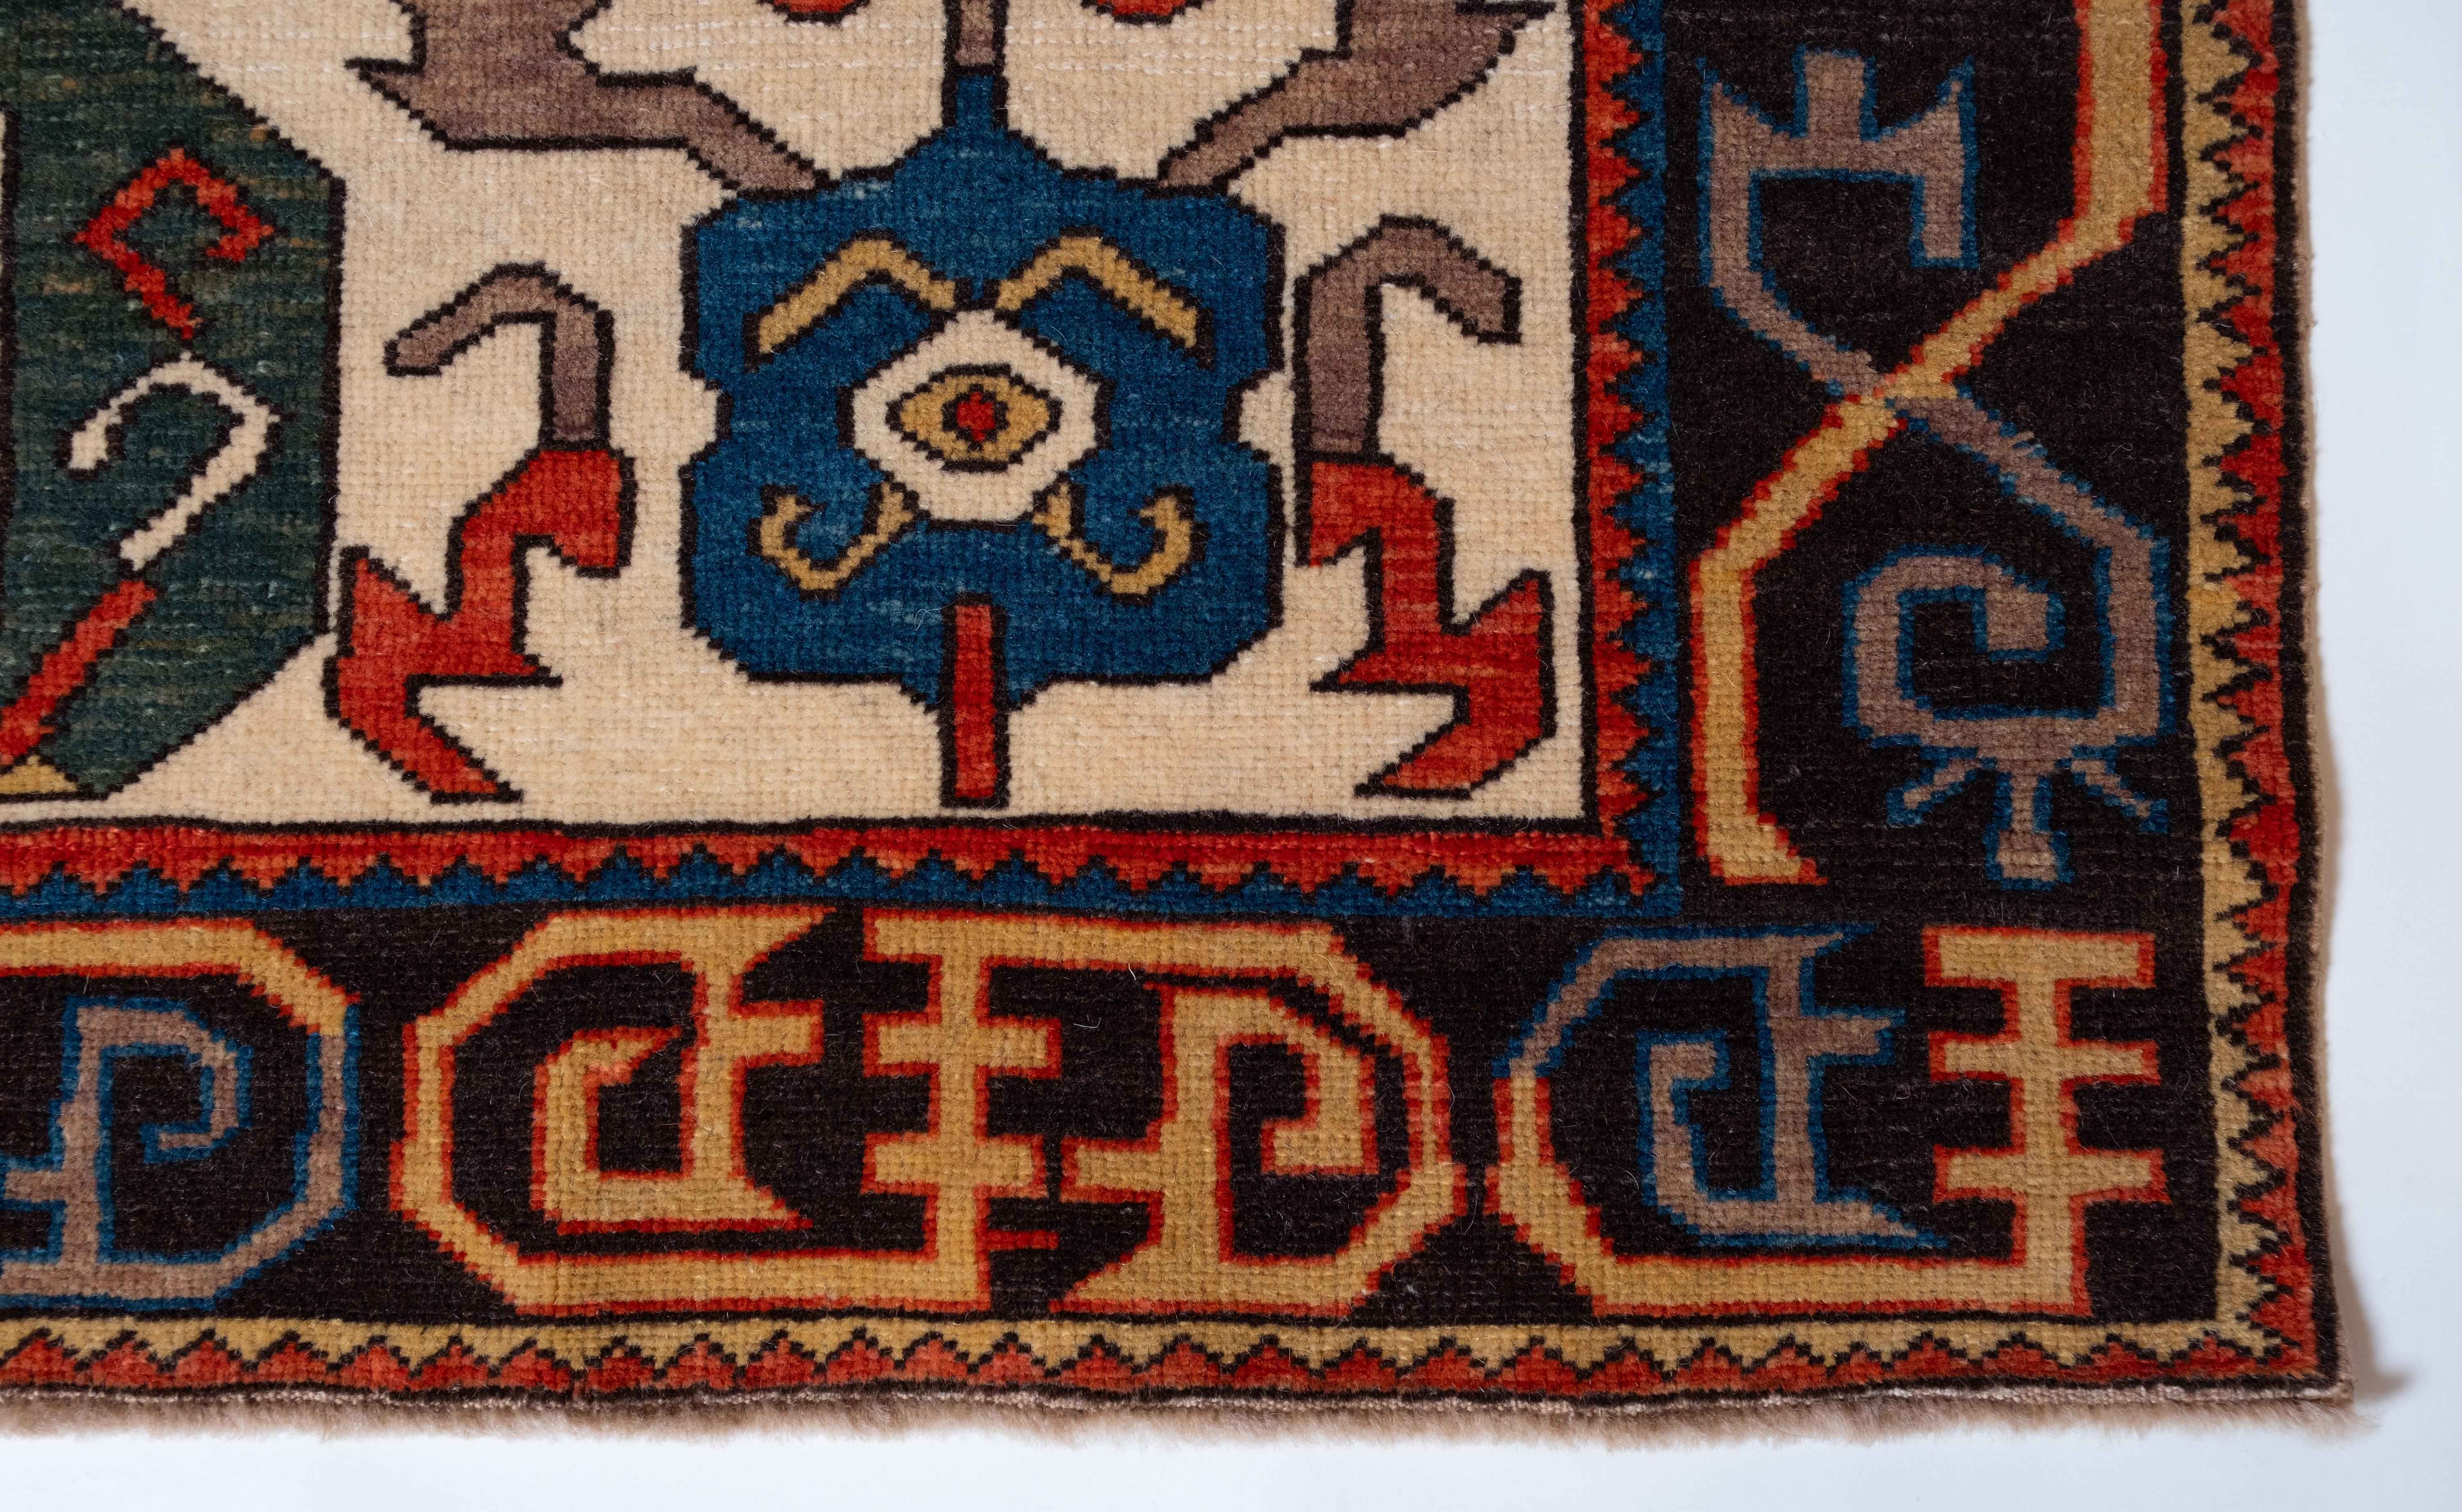 Dies ist ein Schirwan-Teppich mit aufsteigendem Palmetten- und Blumenmuster aus dem 19. Jahrhundert, Region Kuba, Ostkaukasus. Die Kuba-Teppiche dieser überwiegend gelbgrundigen Gruppe sind unter spezialisierten Sammlern bekannt und sehr begehrt.